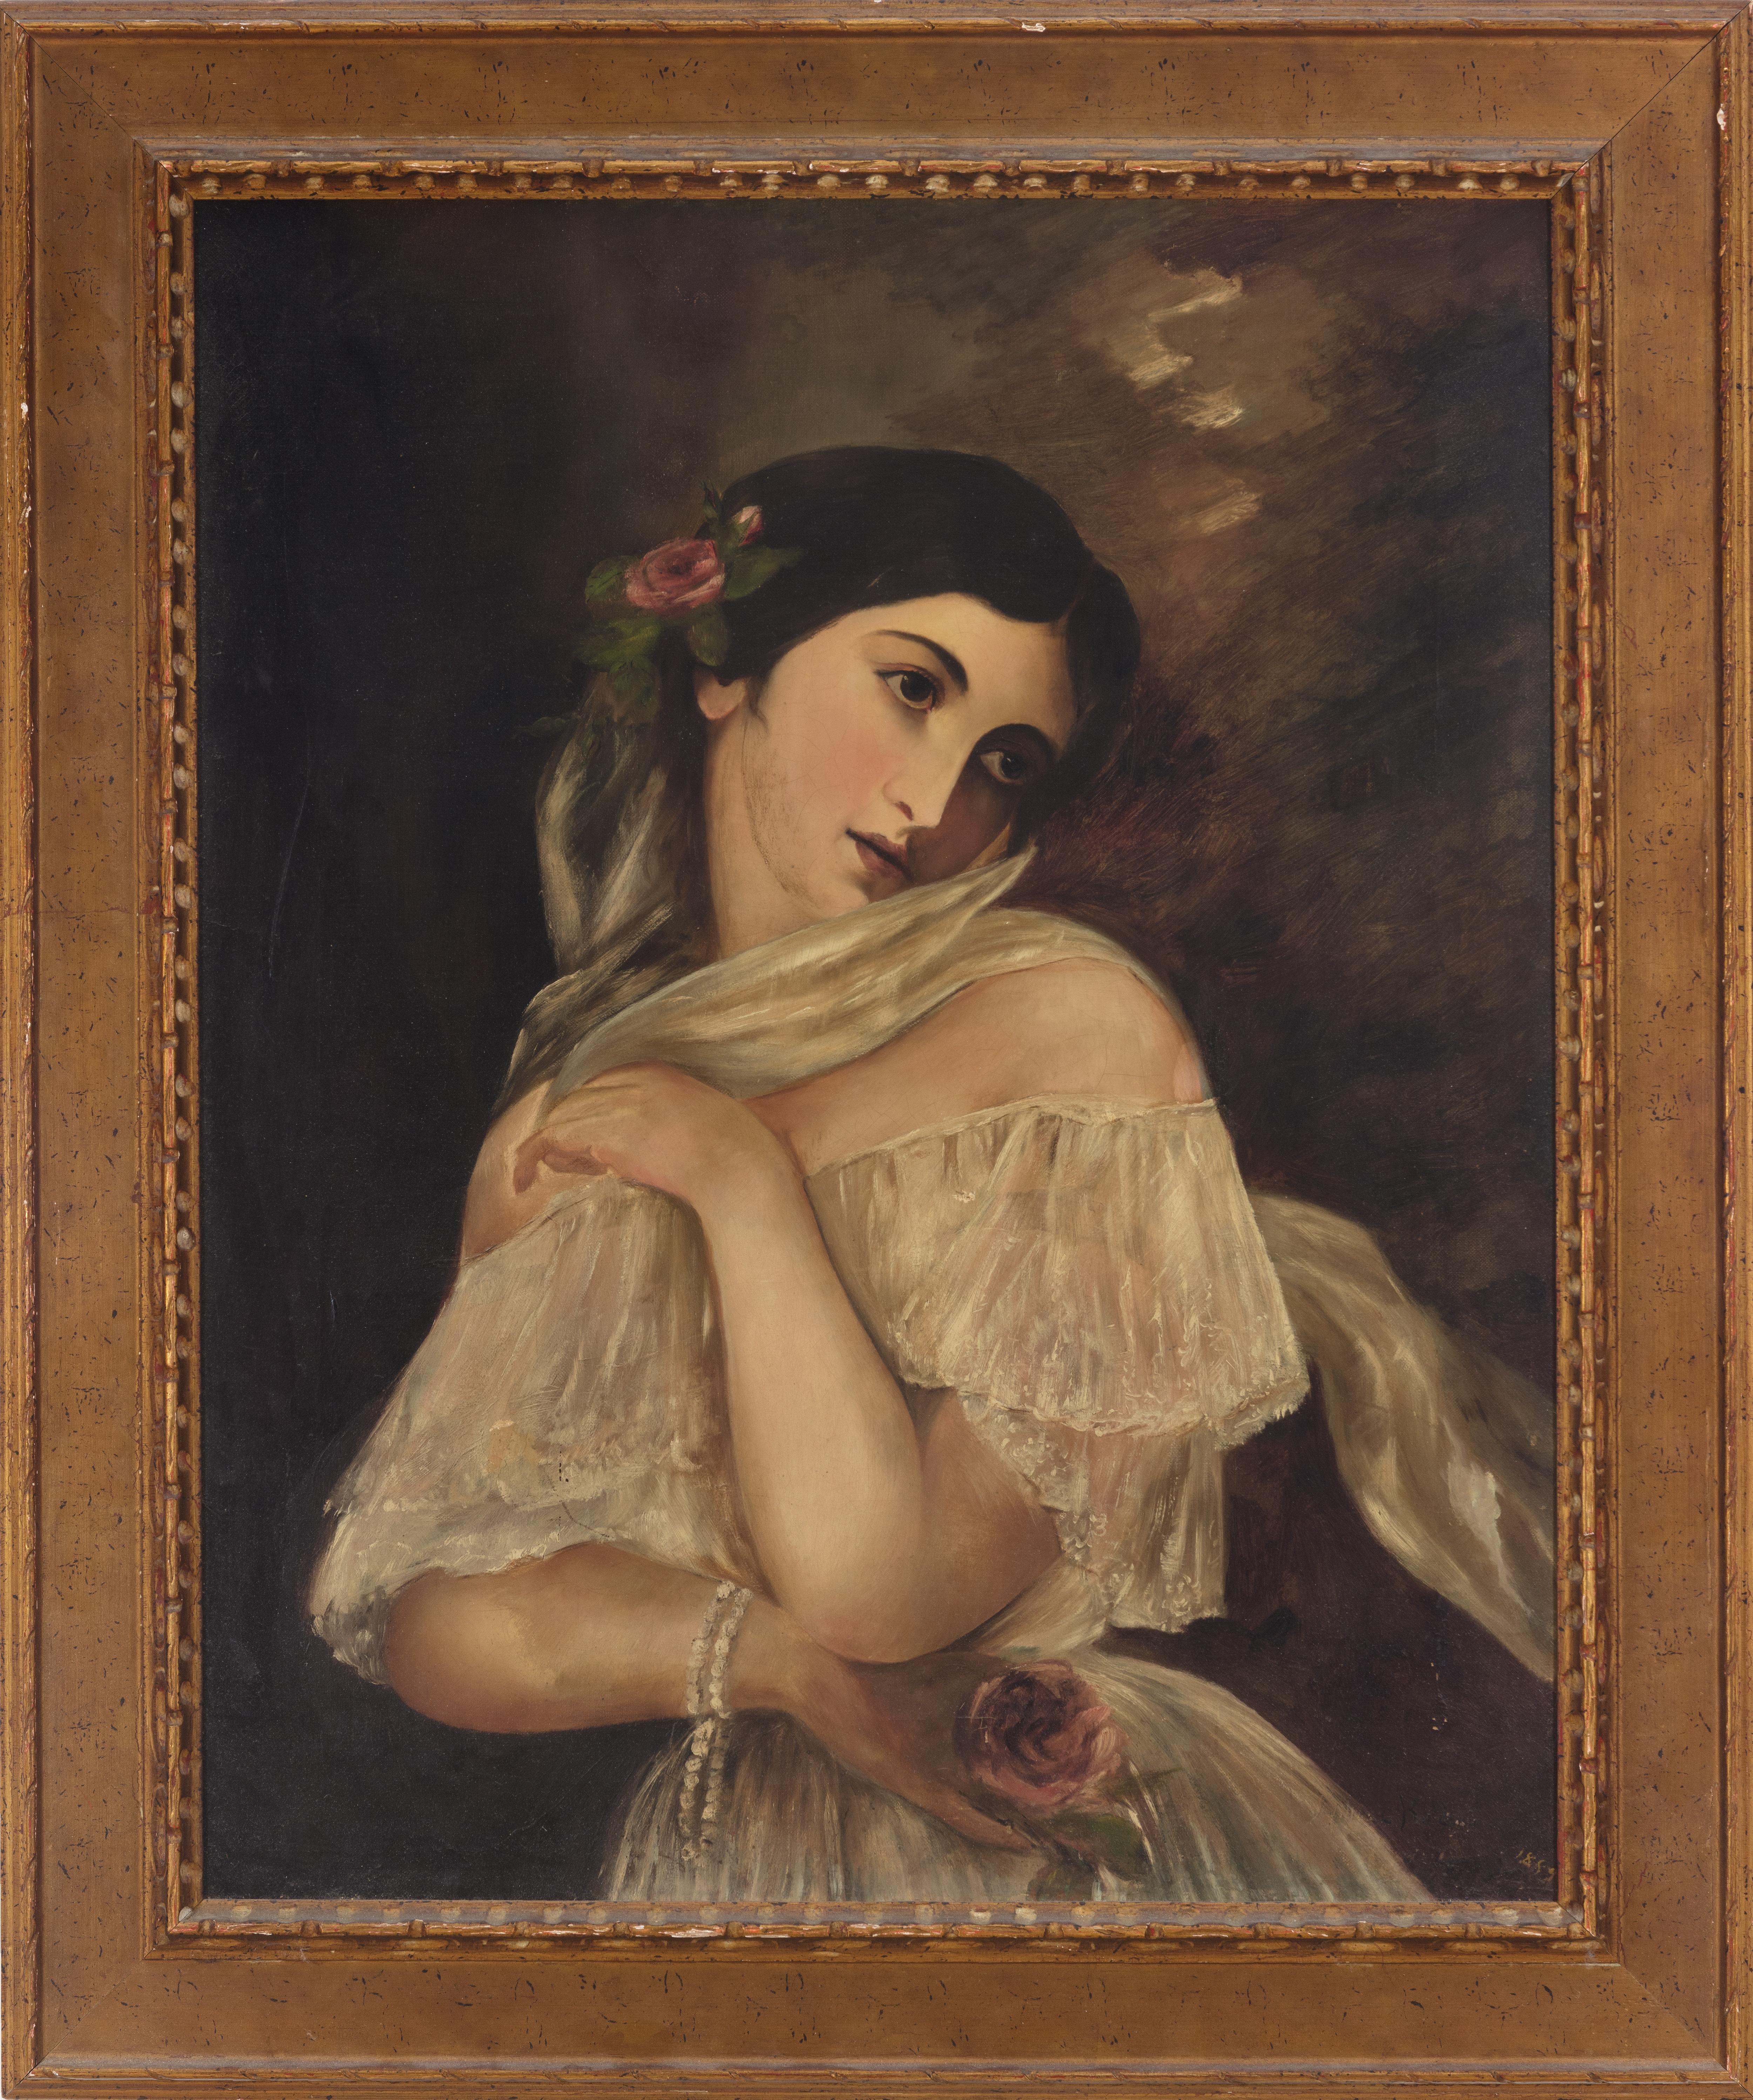 Female Oil Portrait Delicate Austria Romantic 1800s Vintage Woman Realism Signed